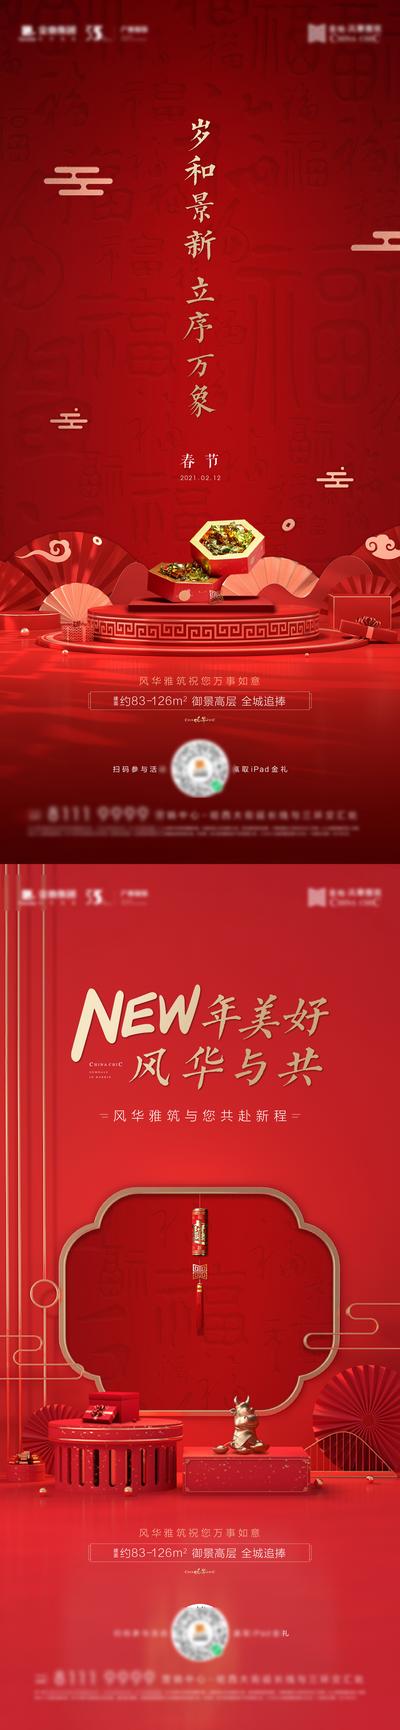 南门网 海报 中国传统节日 除夕  新年 国潮 元旦 新年 春节  红金